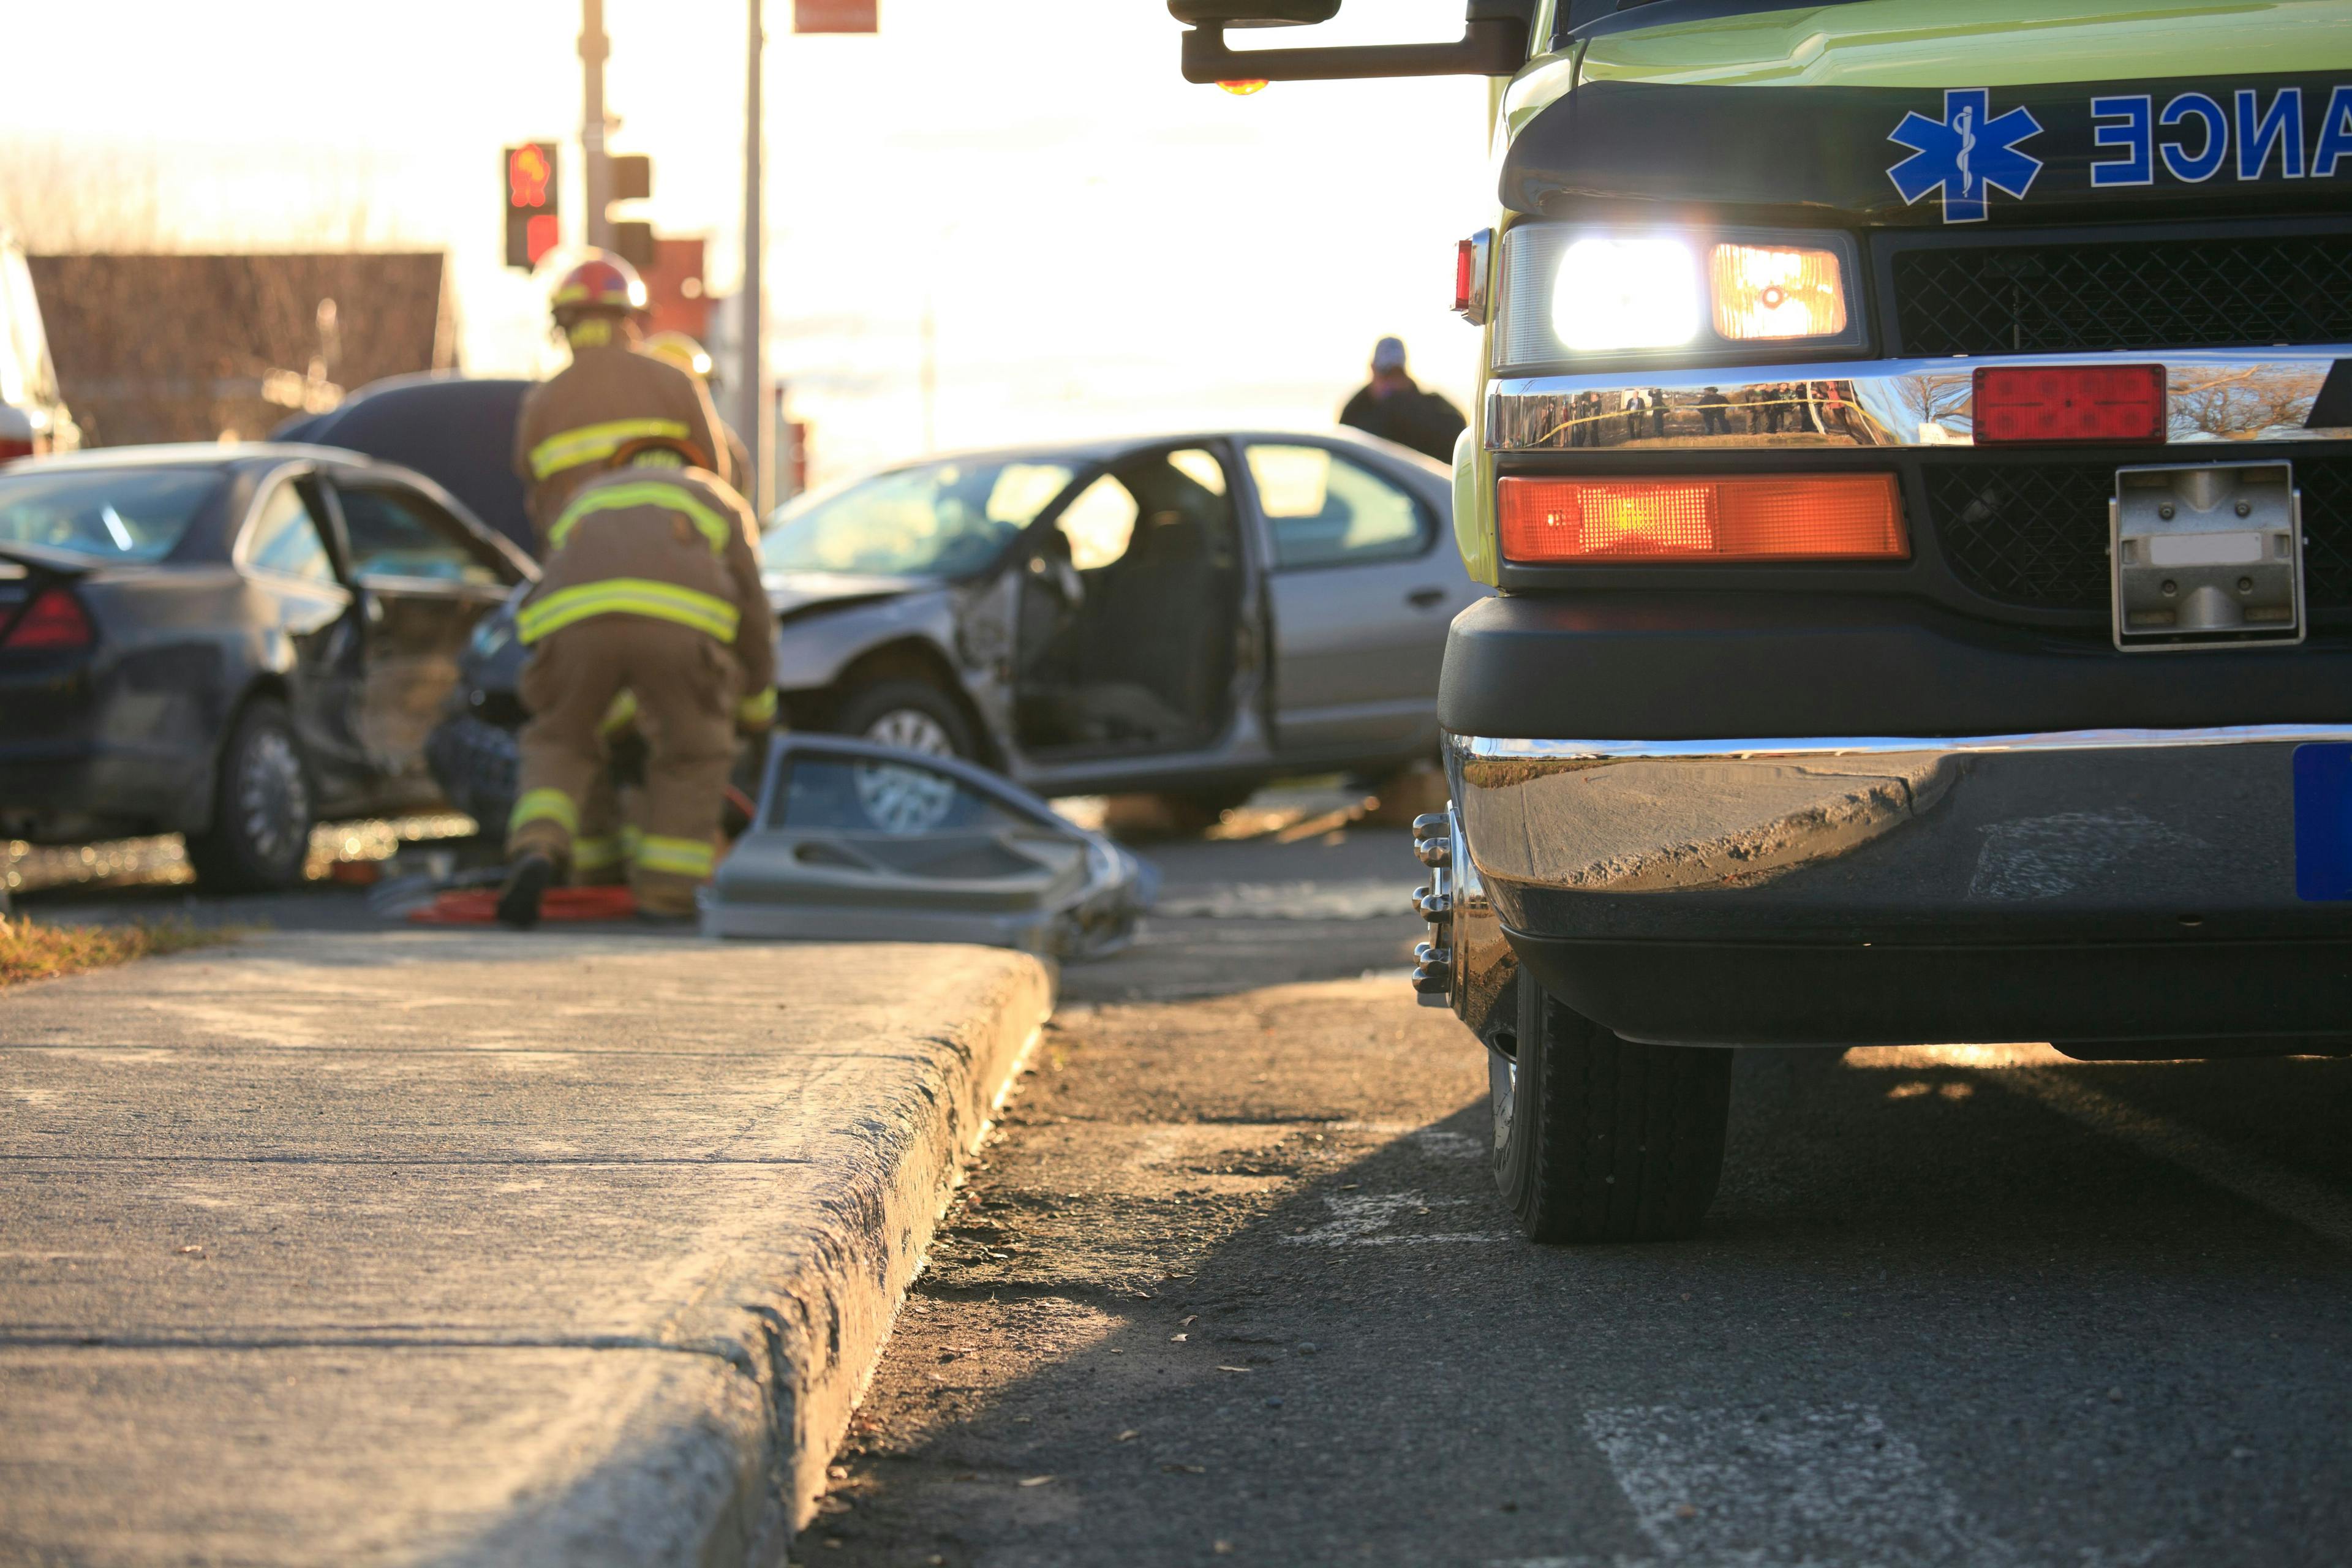 Abogados en Accidentes de Carro: ¿Cómo Pueden Ayudarte?